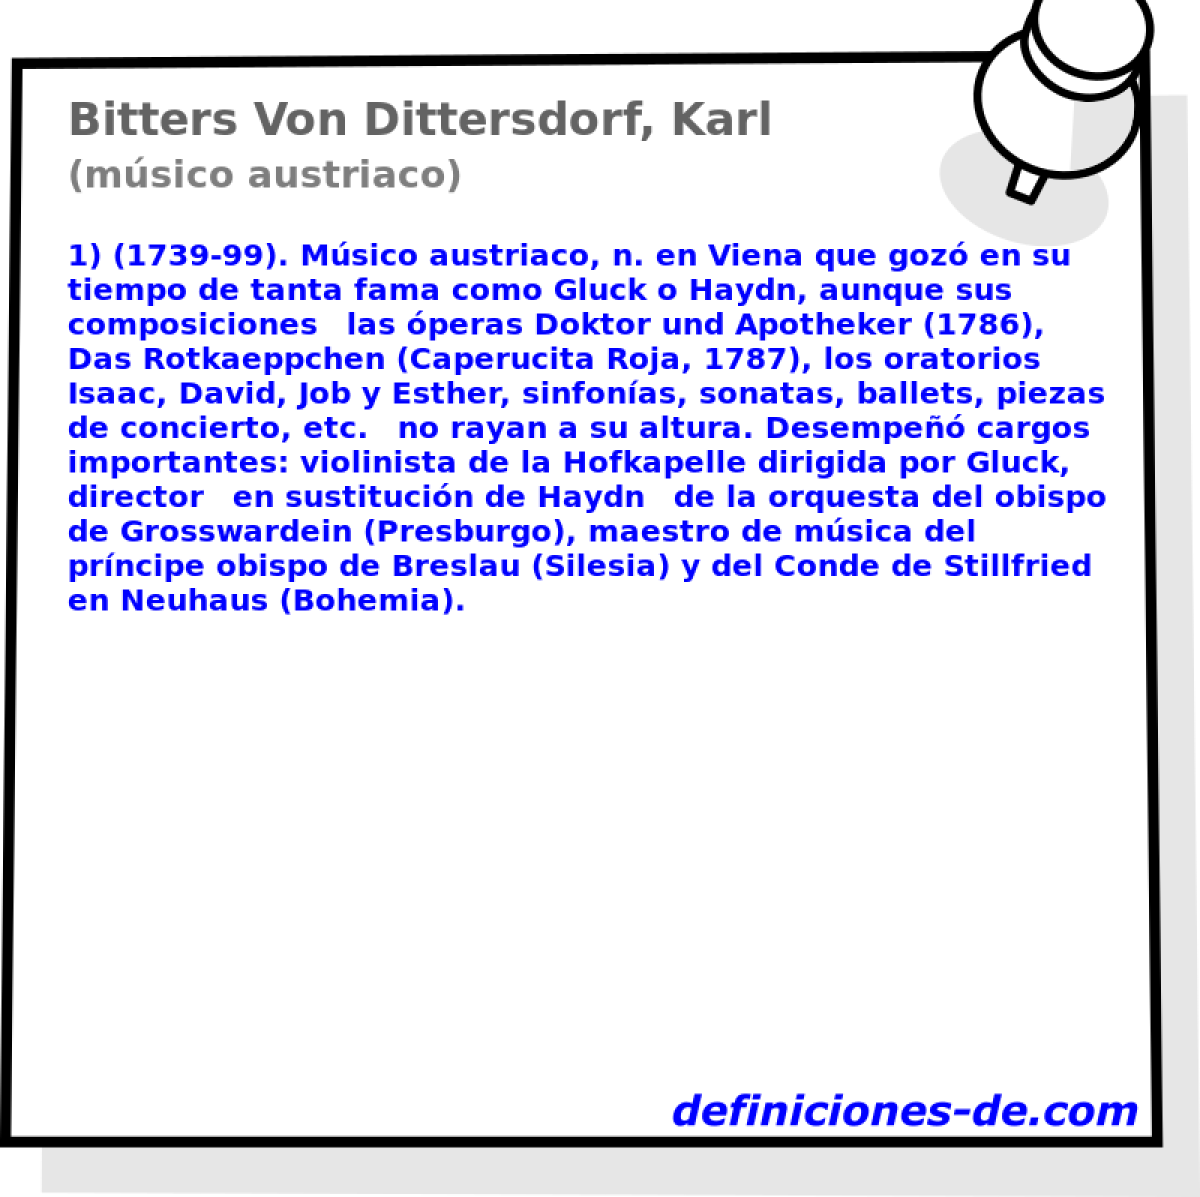 Bitters Von Dittersdorf, Karl (msico austriaco)